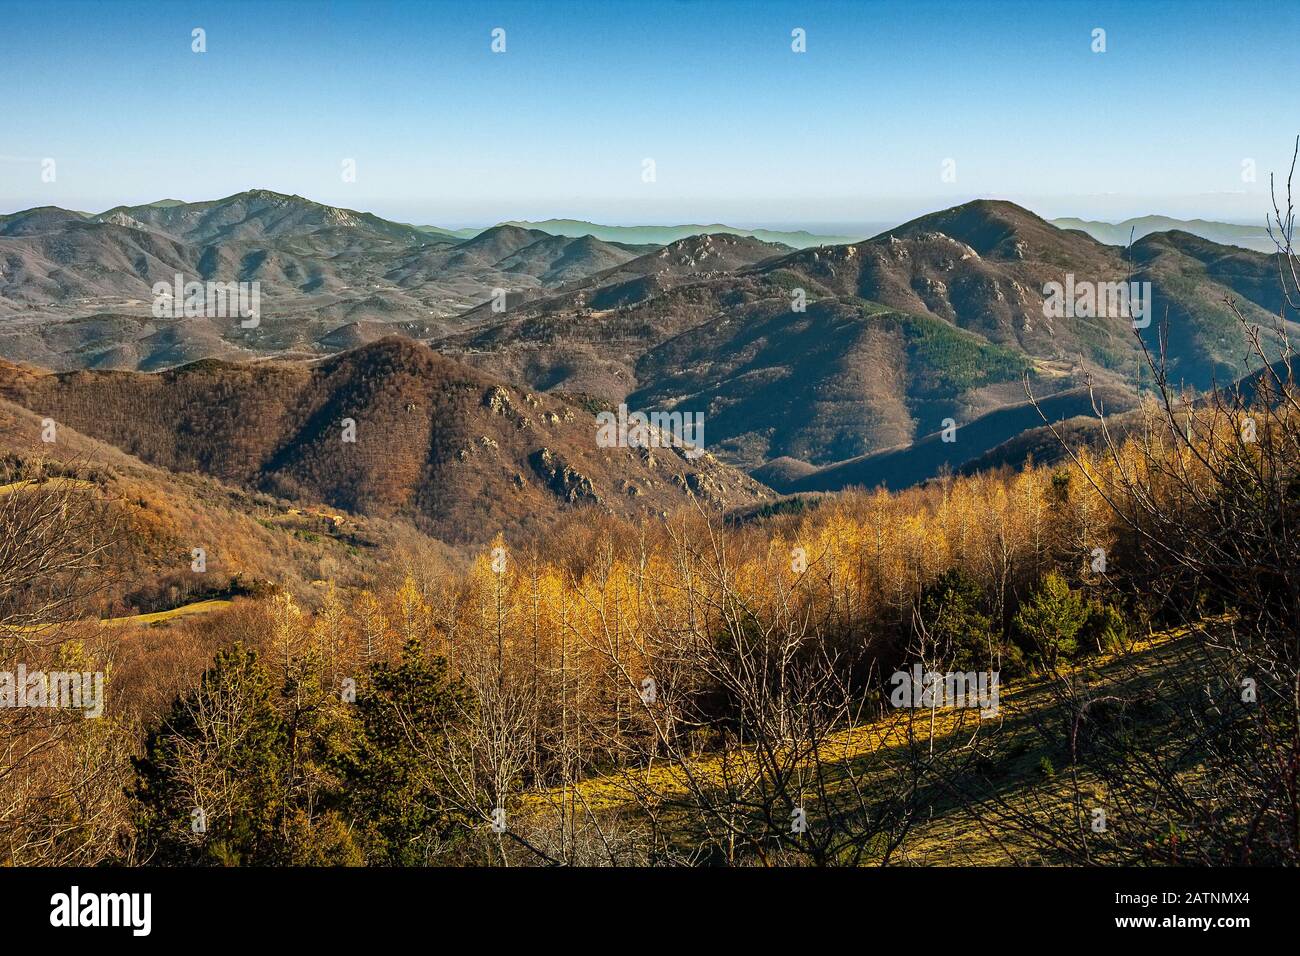 Panorama des collines et des sommets des Pyrénées orientales vers l'Espagne. Prats de Mollo la Preste, Occitania, France Banque D'Images